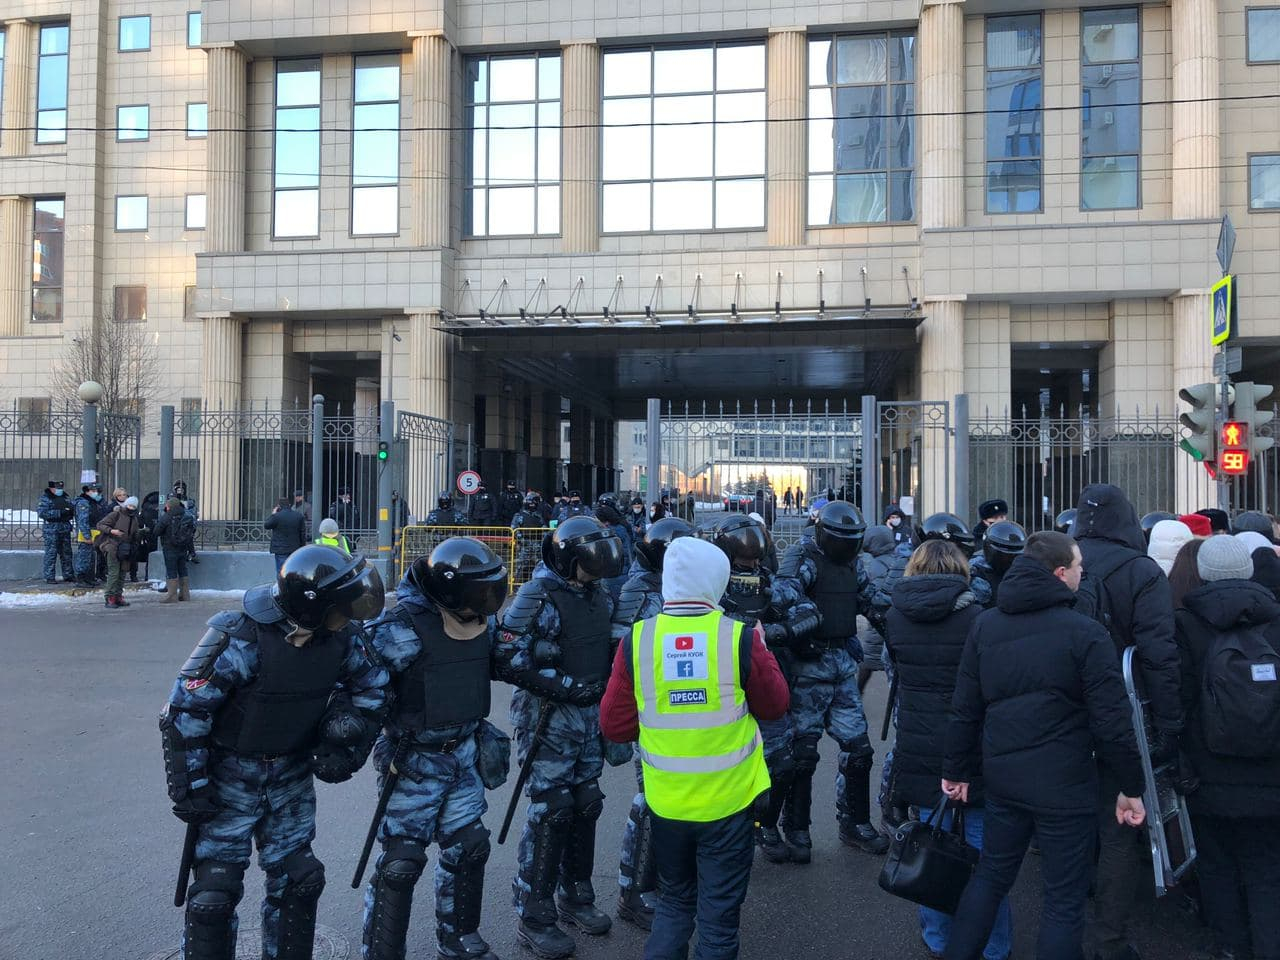 Сотрудники ОМОН начали выстраивать цепь перед переходом к зданию Мосгорсуда, 2 января 2021 года / Фото: Дарья Козлова для «Новой газеты»